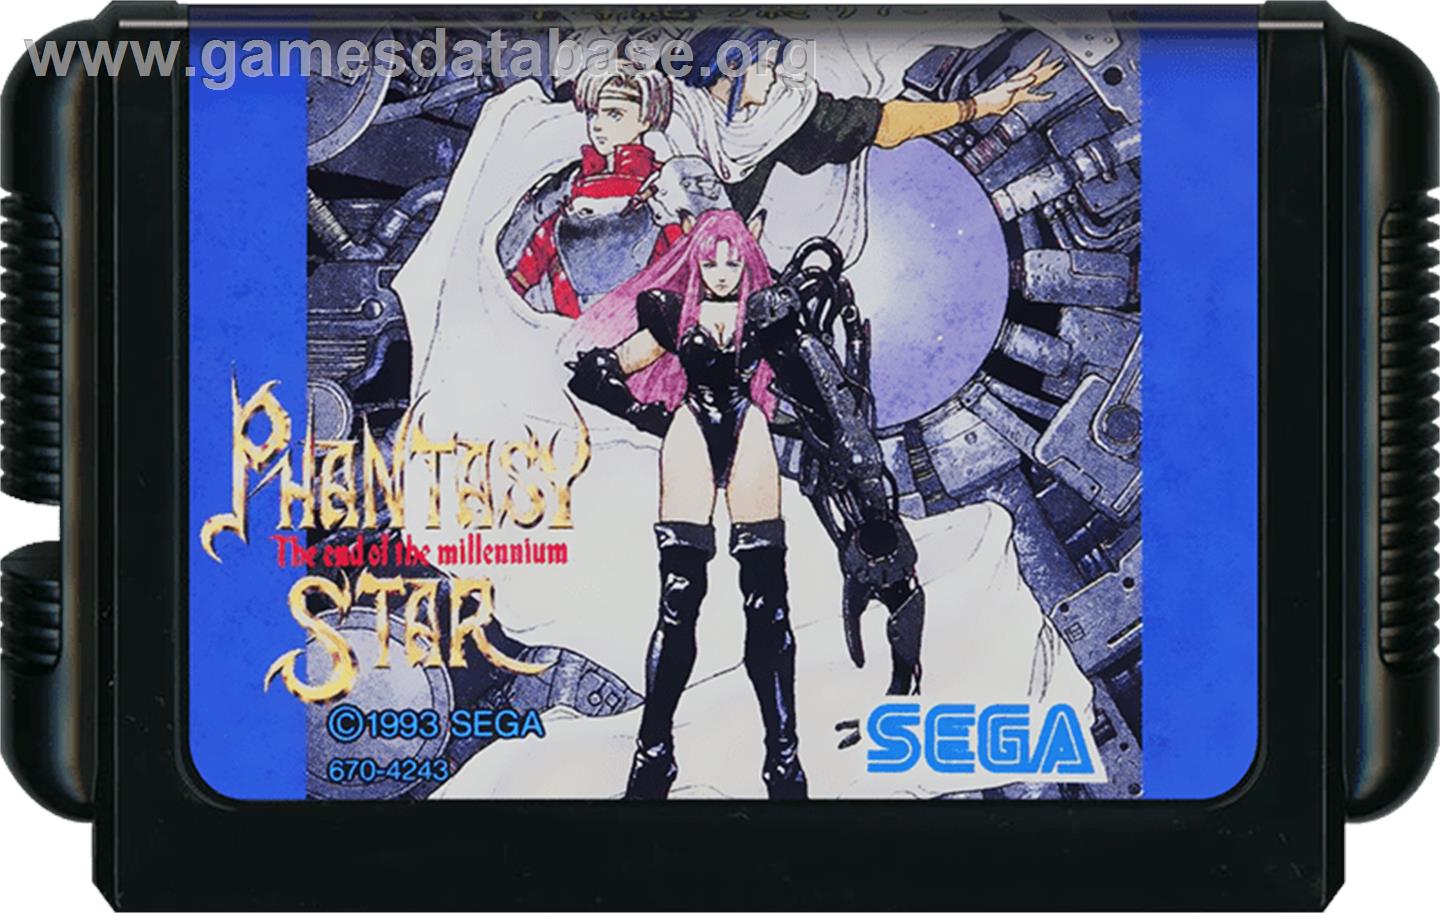 Phantasy Star: The End of the Millenium - Sega Genesis - Artwork - Cartridge